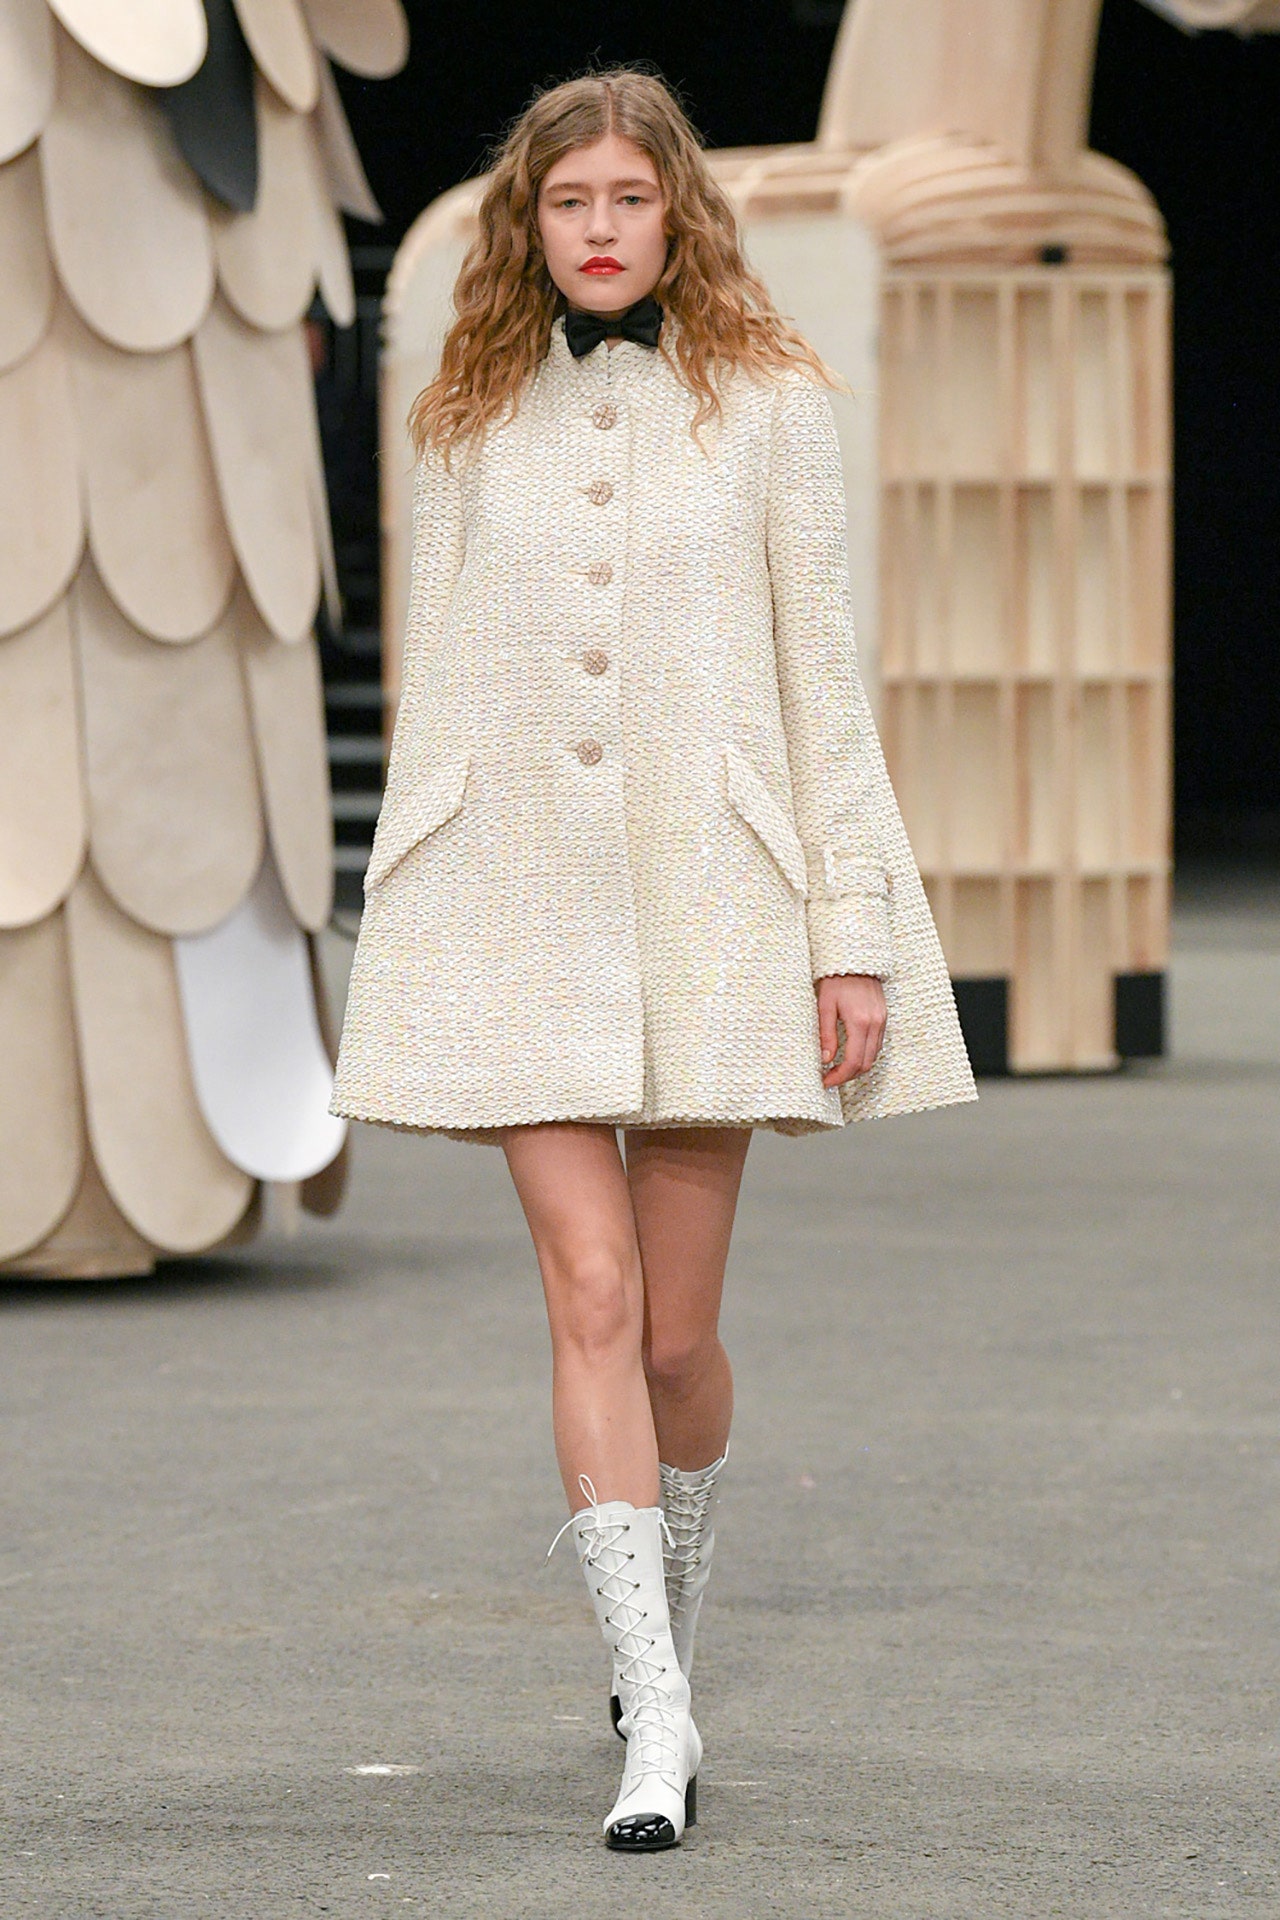 Chanel, en son Paris Couture Week koleksiyonuyla kendine güvenen stile saygı duruşunda bulunuyor